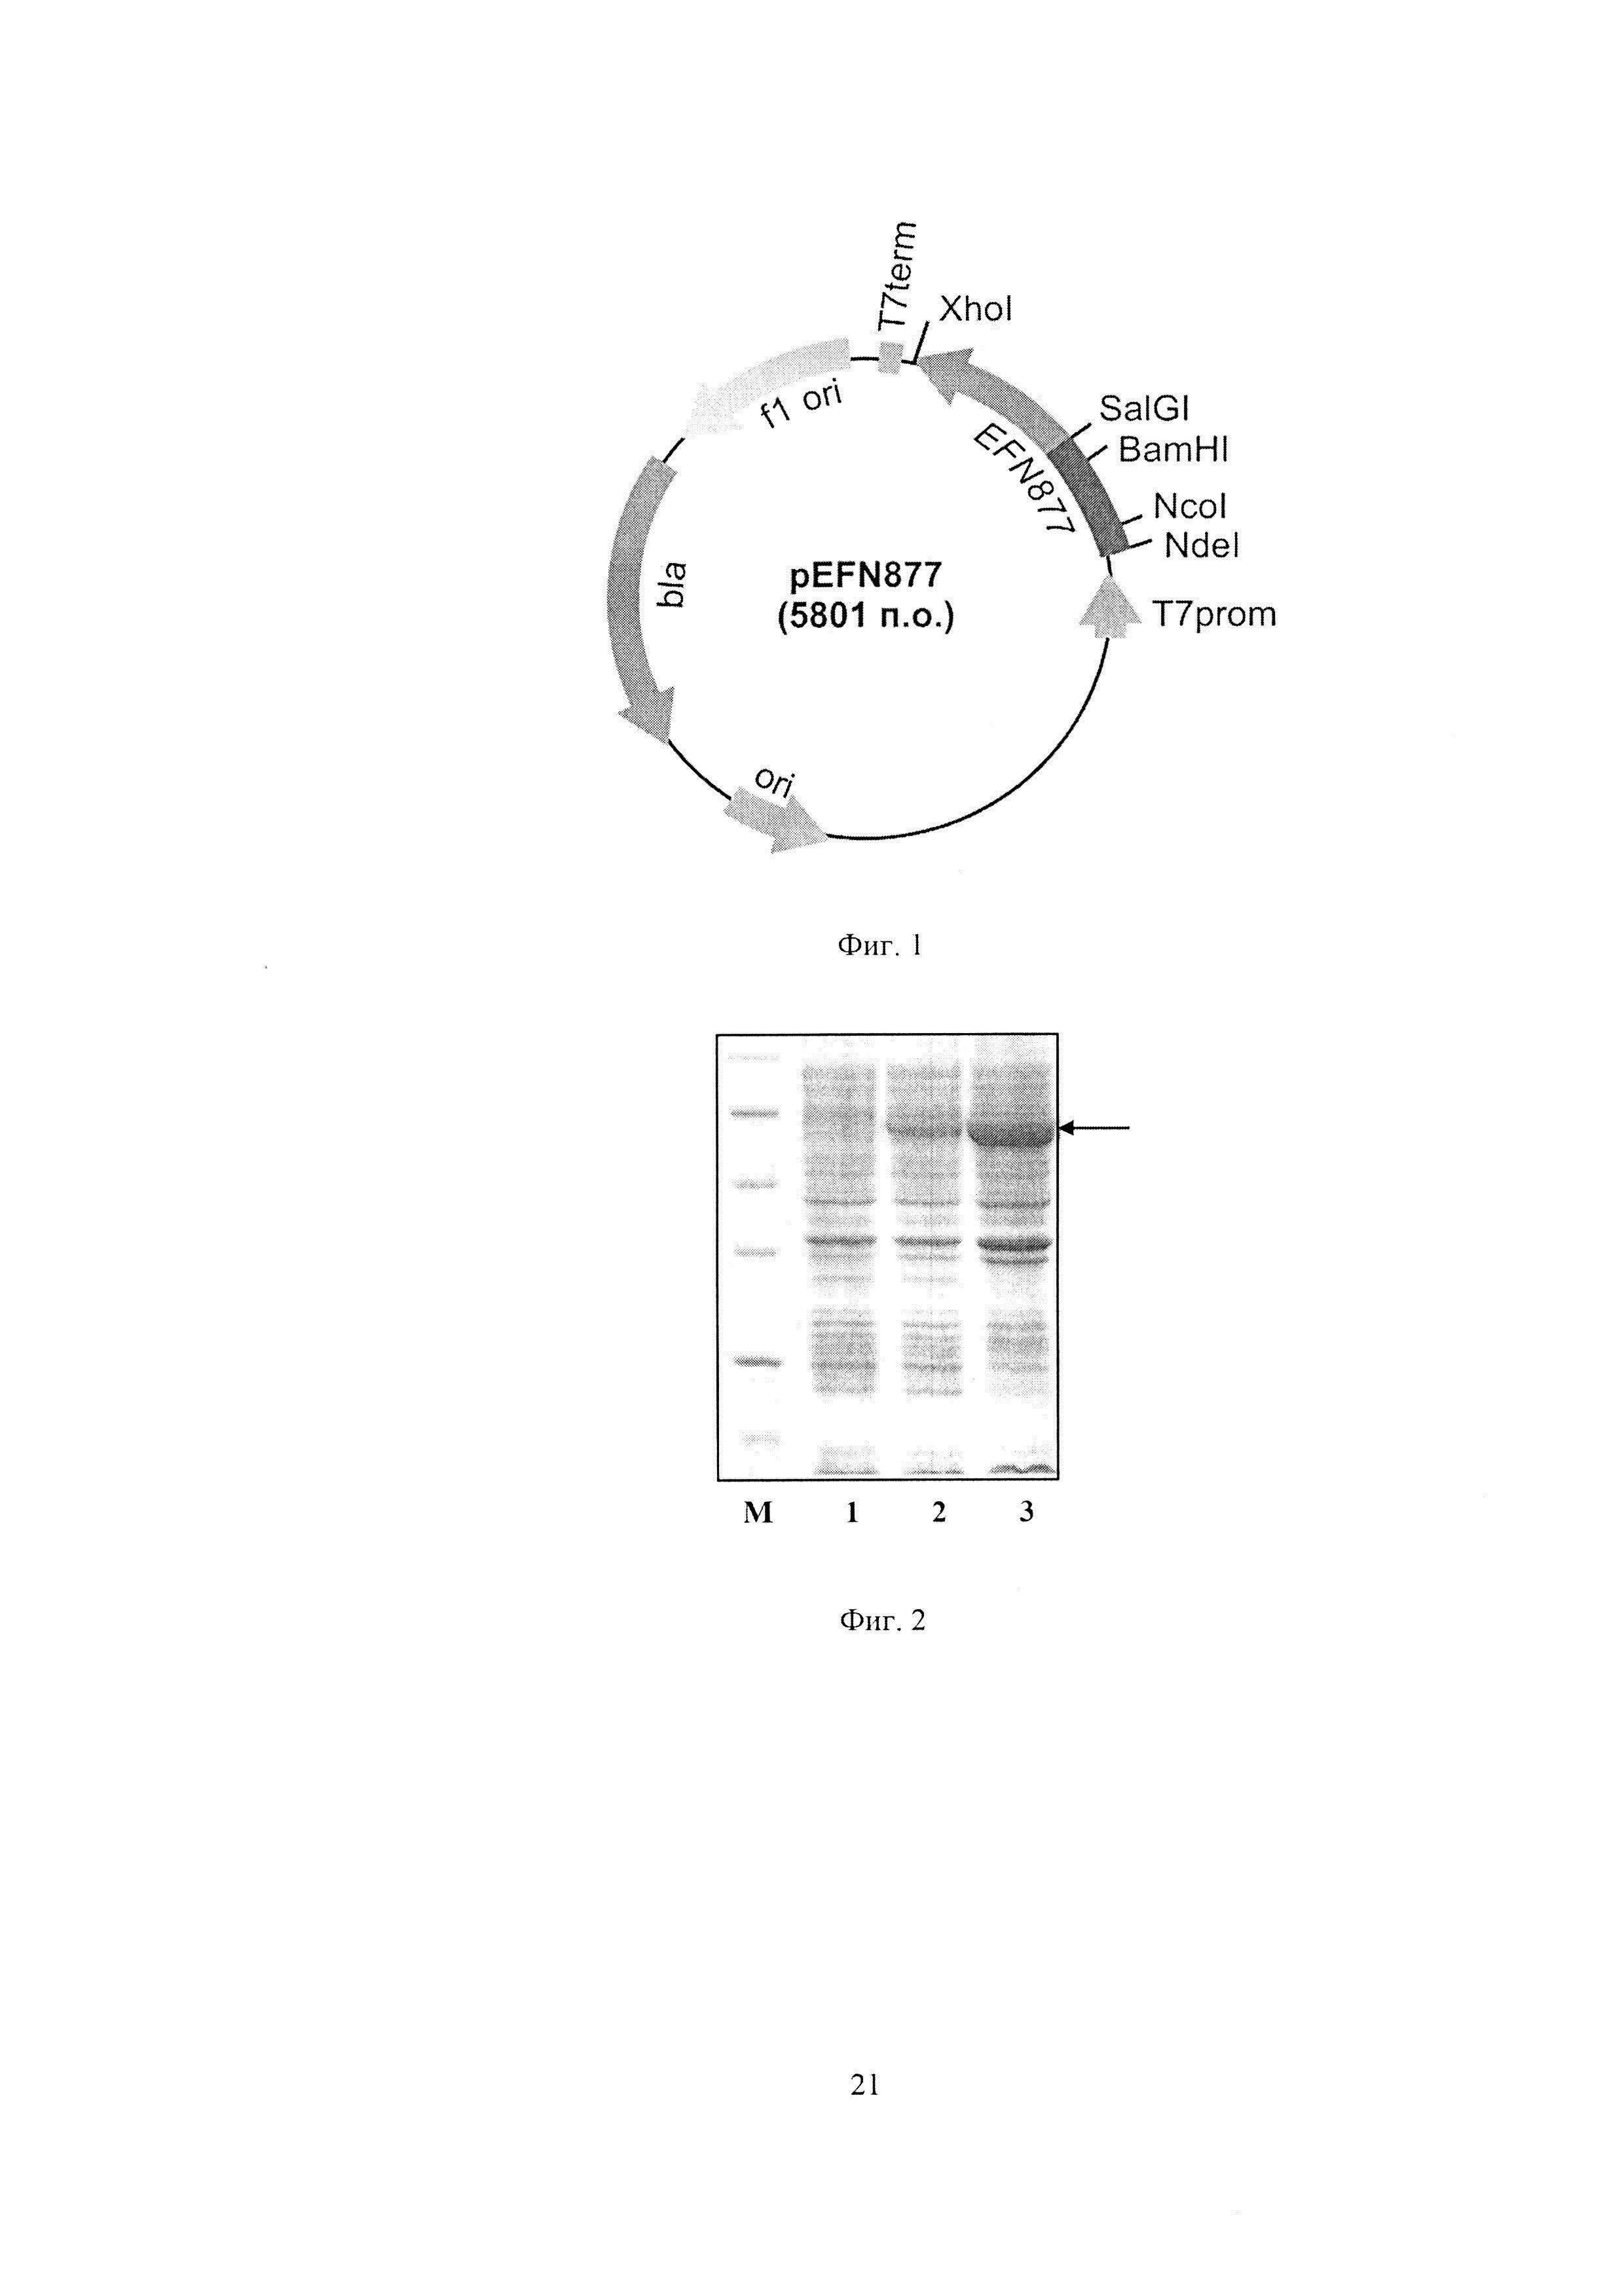 Рекомбинантная плазмидная ДНК pEFN877, детерминирующая экспрессию гибридного полипептида со свойствами 10-го домена фибронектина на поверхности клеток Escherichia coli, и штамм бактерий Escherichia coli BL21(DE3)pLysS/pEFN877 - продуцент гибридного полипептида со свойствами 10-го домена фибронектина на поверхности клеток